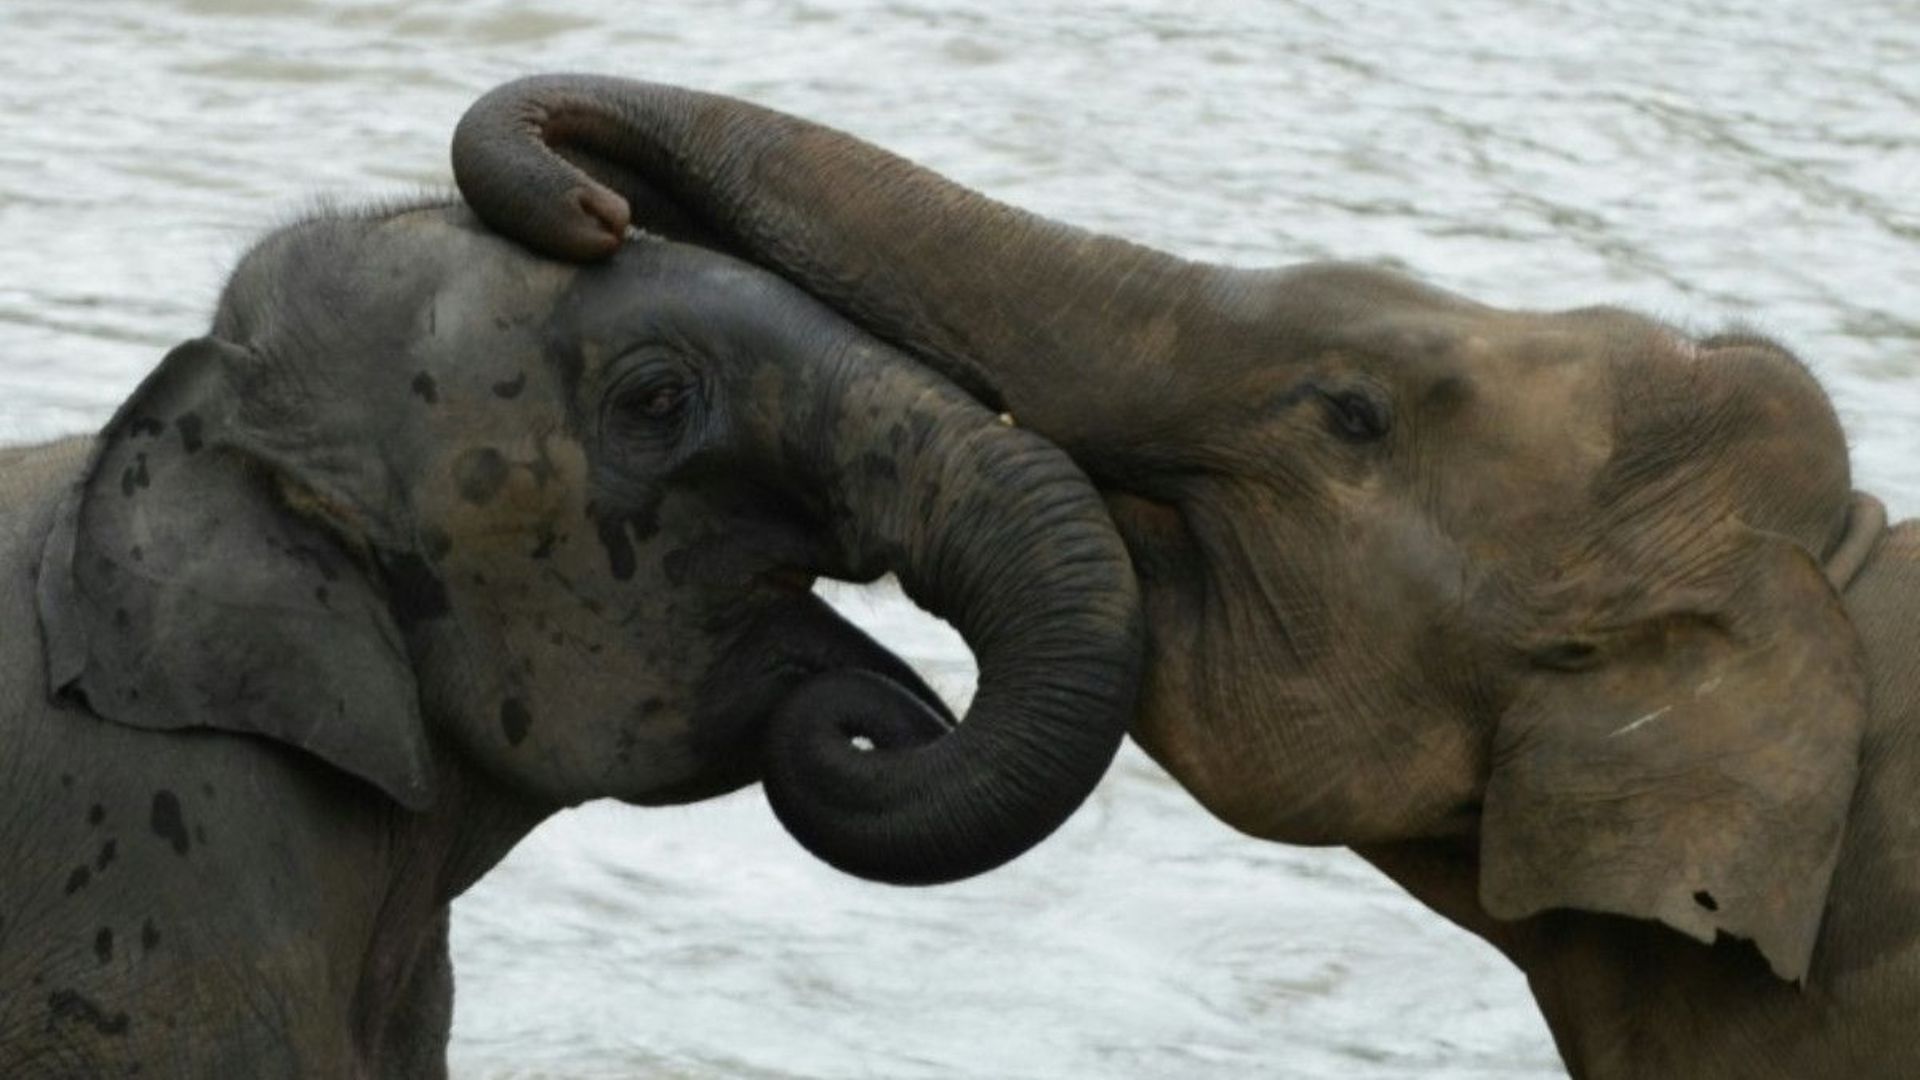 Des éléphants jouent durant leur bain quotidien dans la rivière au sanctuaire d'éléphants de Pinnawala, le 11 août 2020.